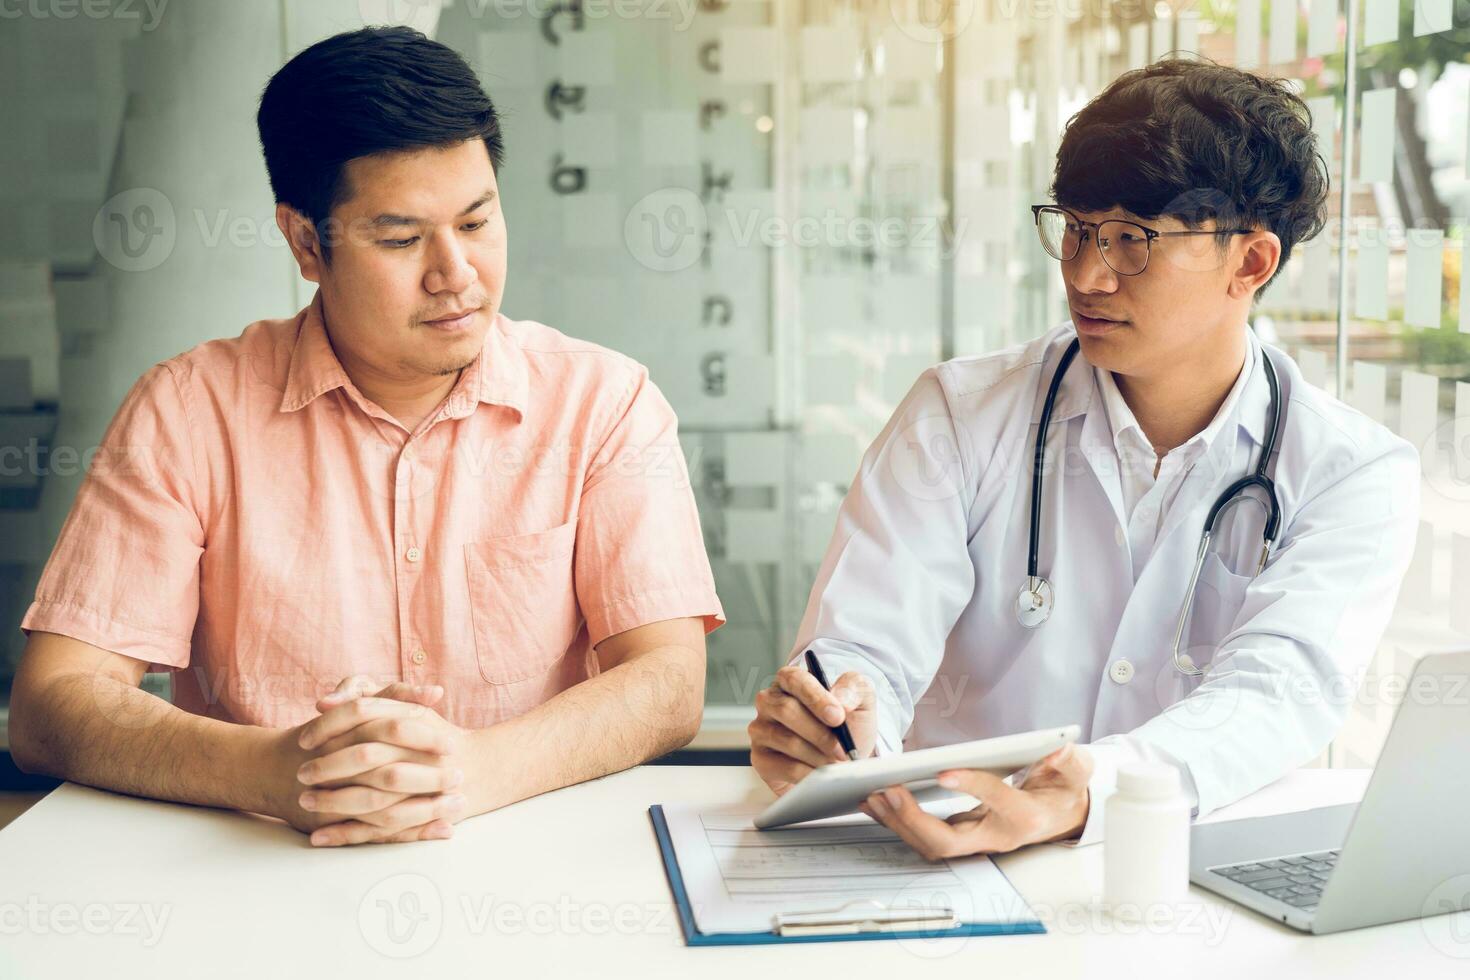 patient masculin écoutant le médecin au bureau et consultant les soins de santé à l'hôpital. photo